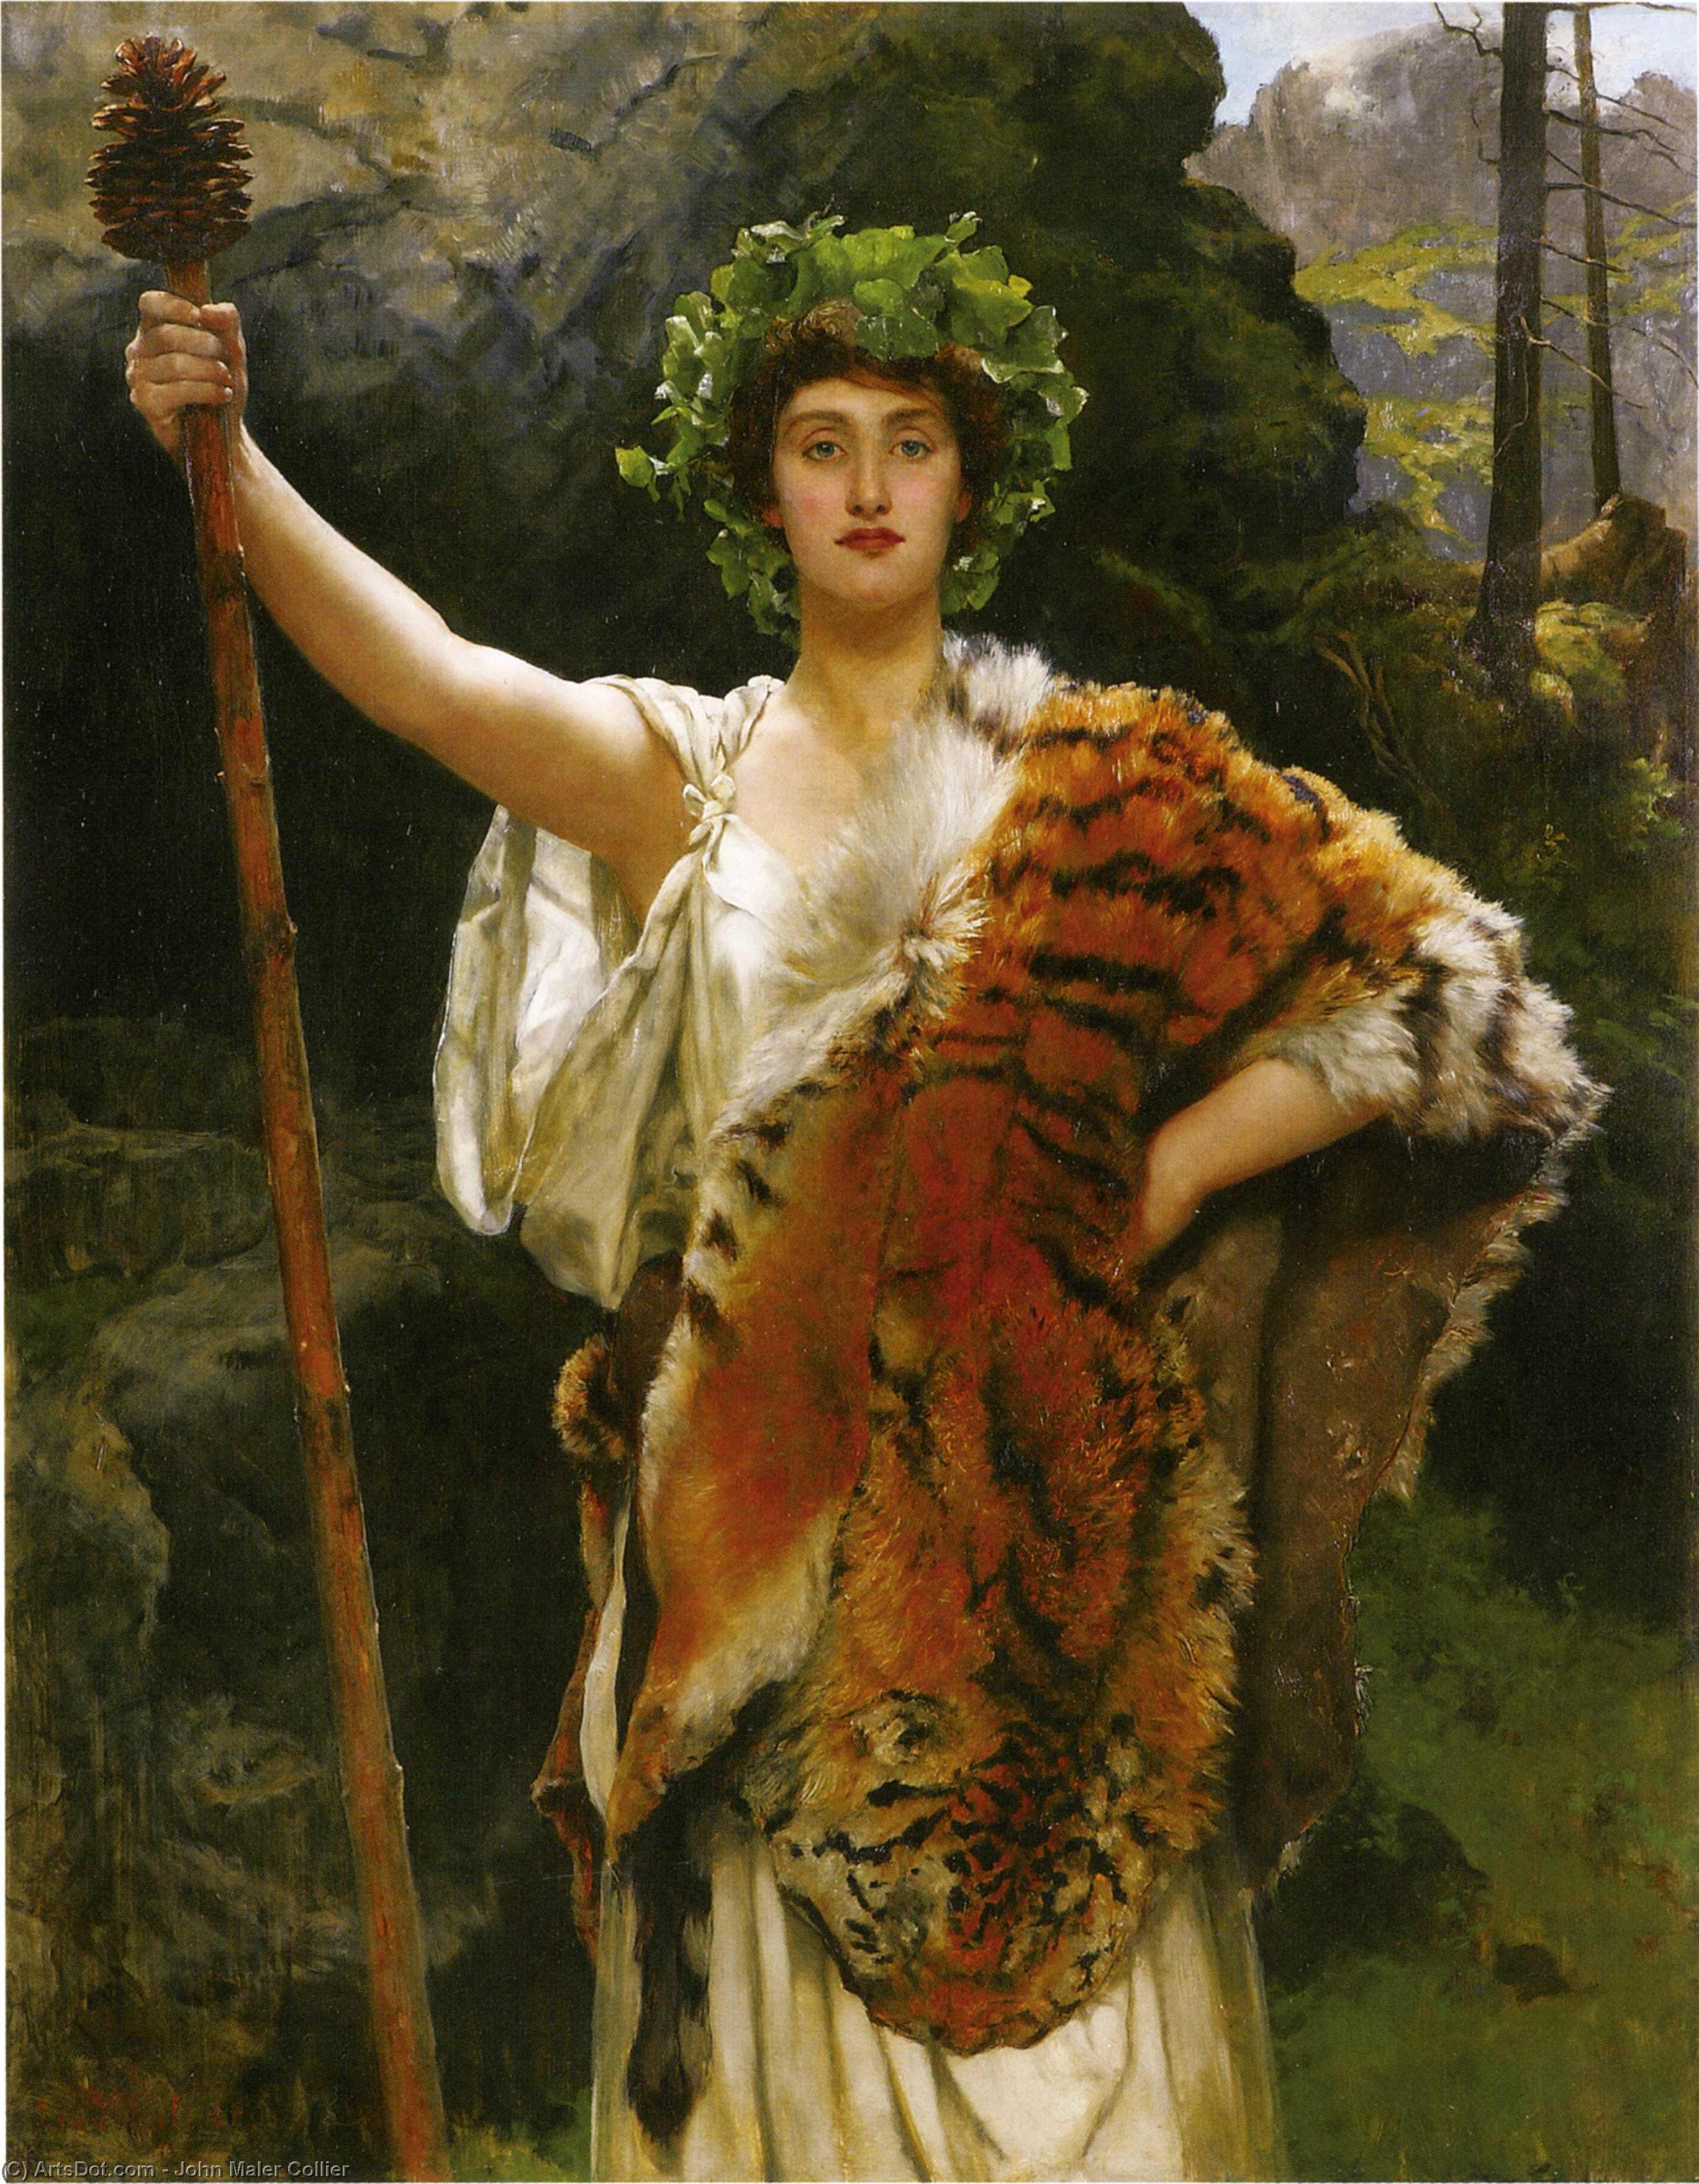 John Maler Collier, La prêtresse de Bacchus. Huile sur toile peinte entre 1885 et 1889.